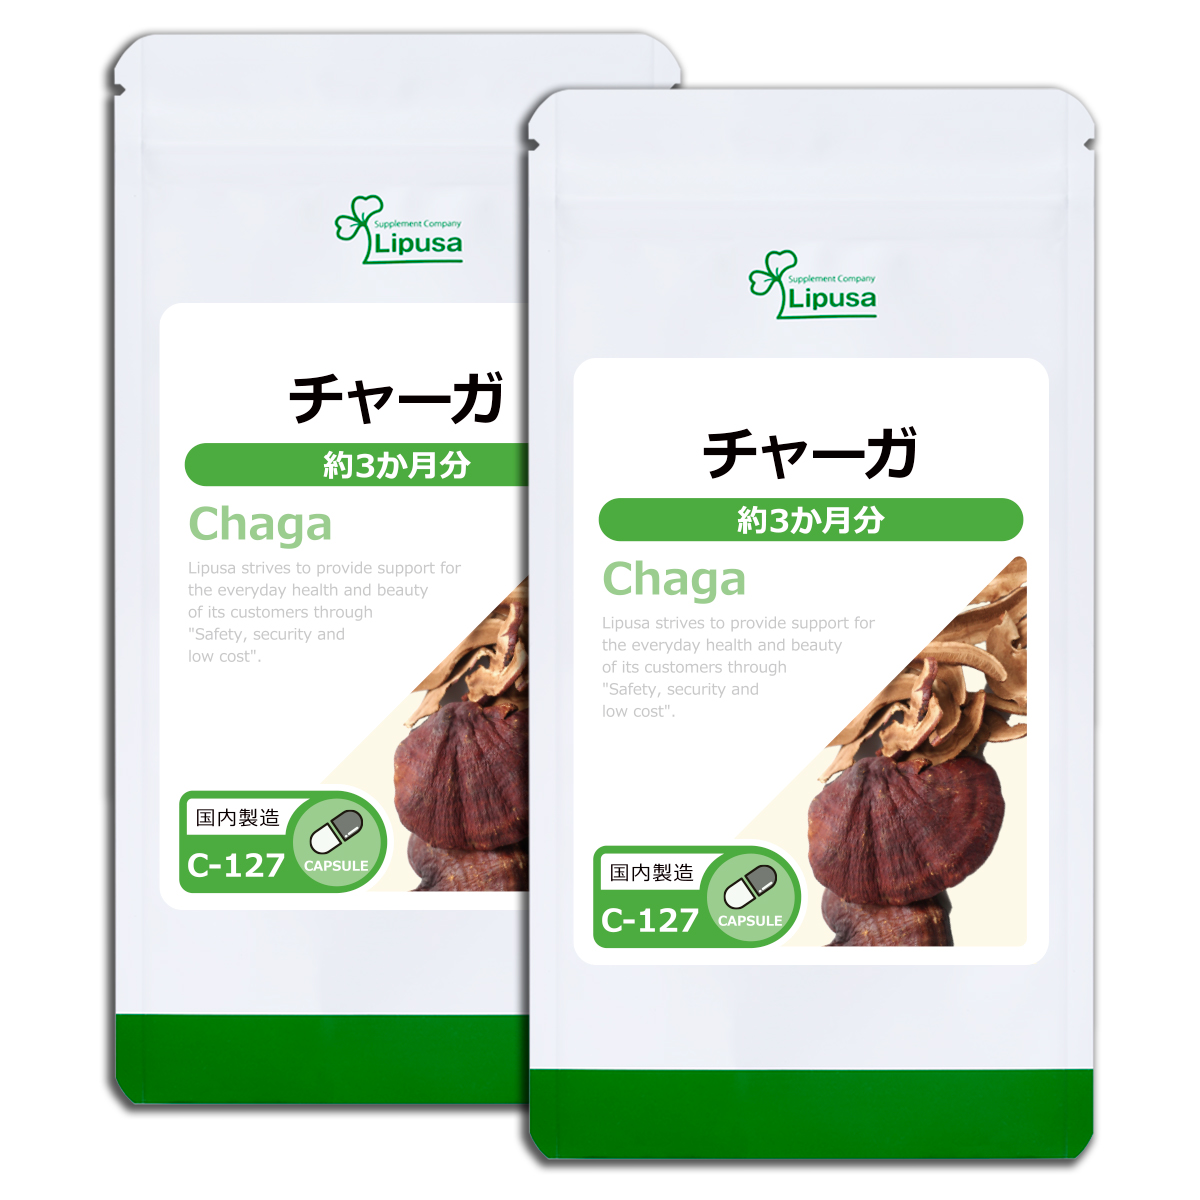 チャーガ(カバノアナタケ) 約3か月分×2袋 C-127-2 サプリメント 健康